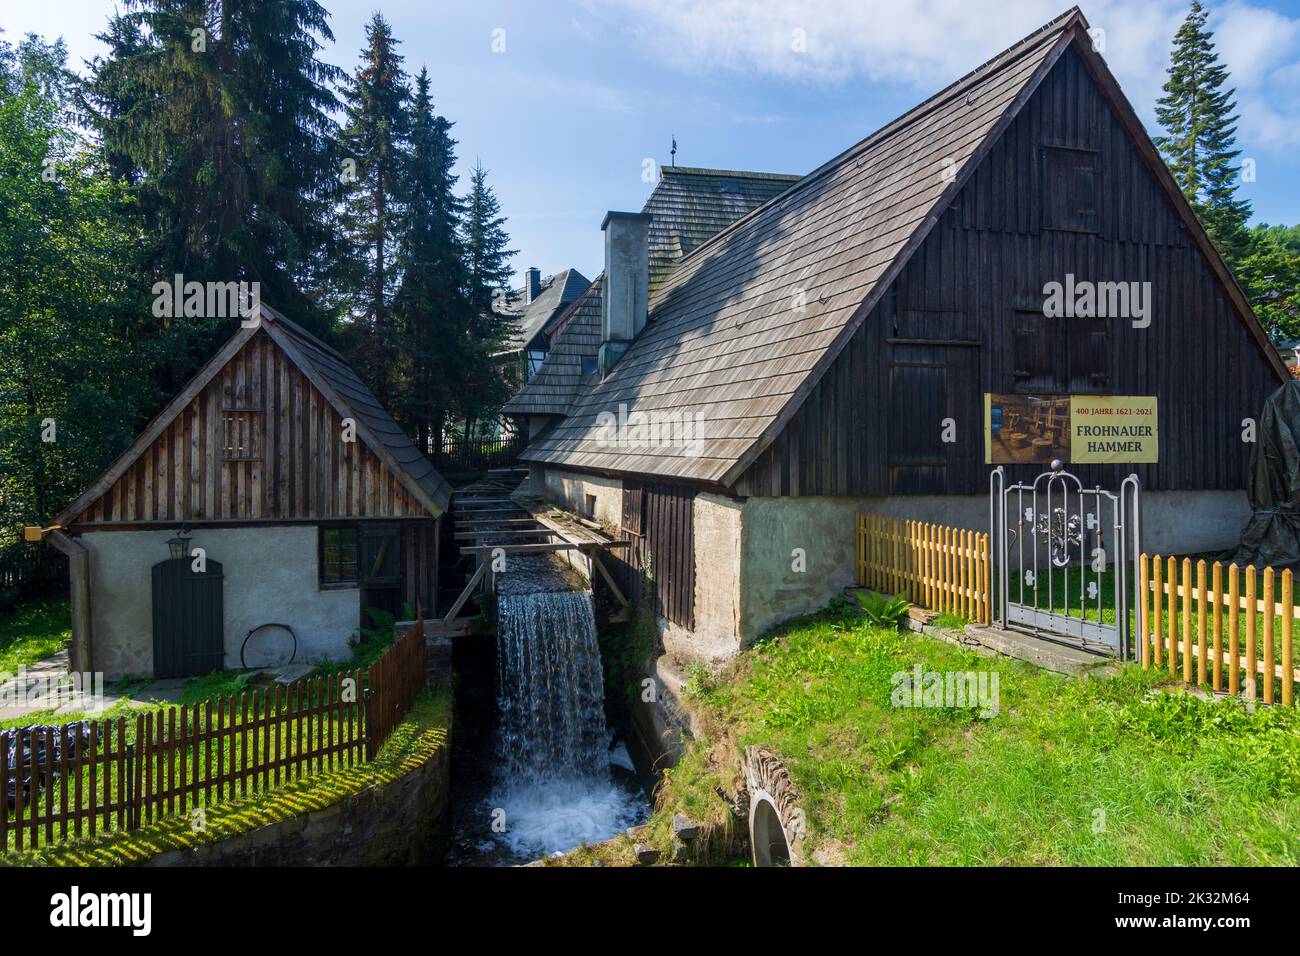 Annaberg-Buchholz: Frohnauer Hammer, historische Hammermühle in Frohnau im  Erzgebirge, Sachsen, Sachsen, Deutschland Stockfotografie - Alamy